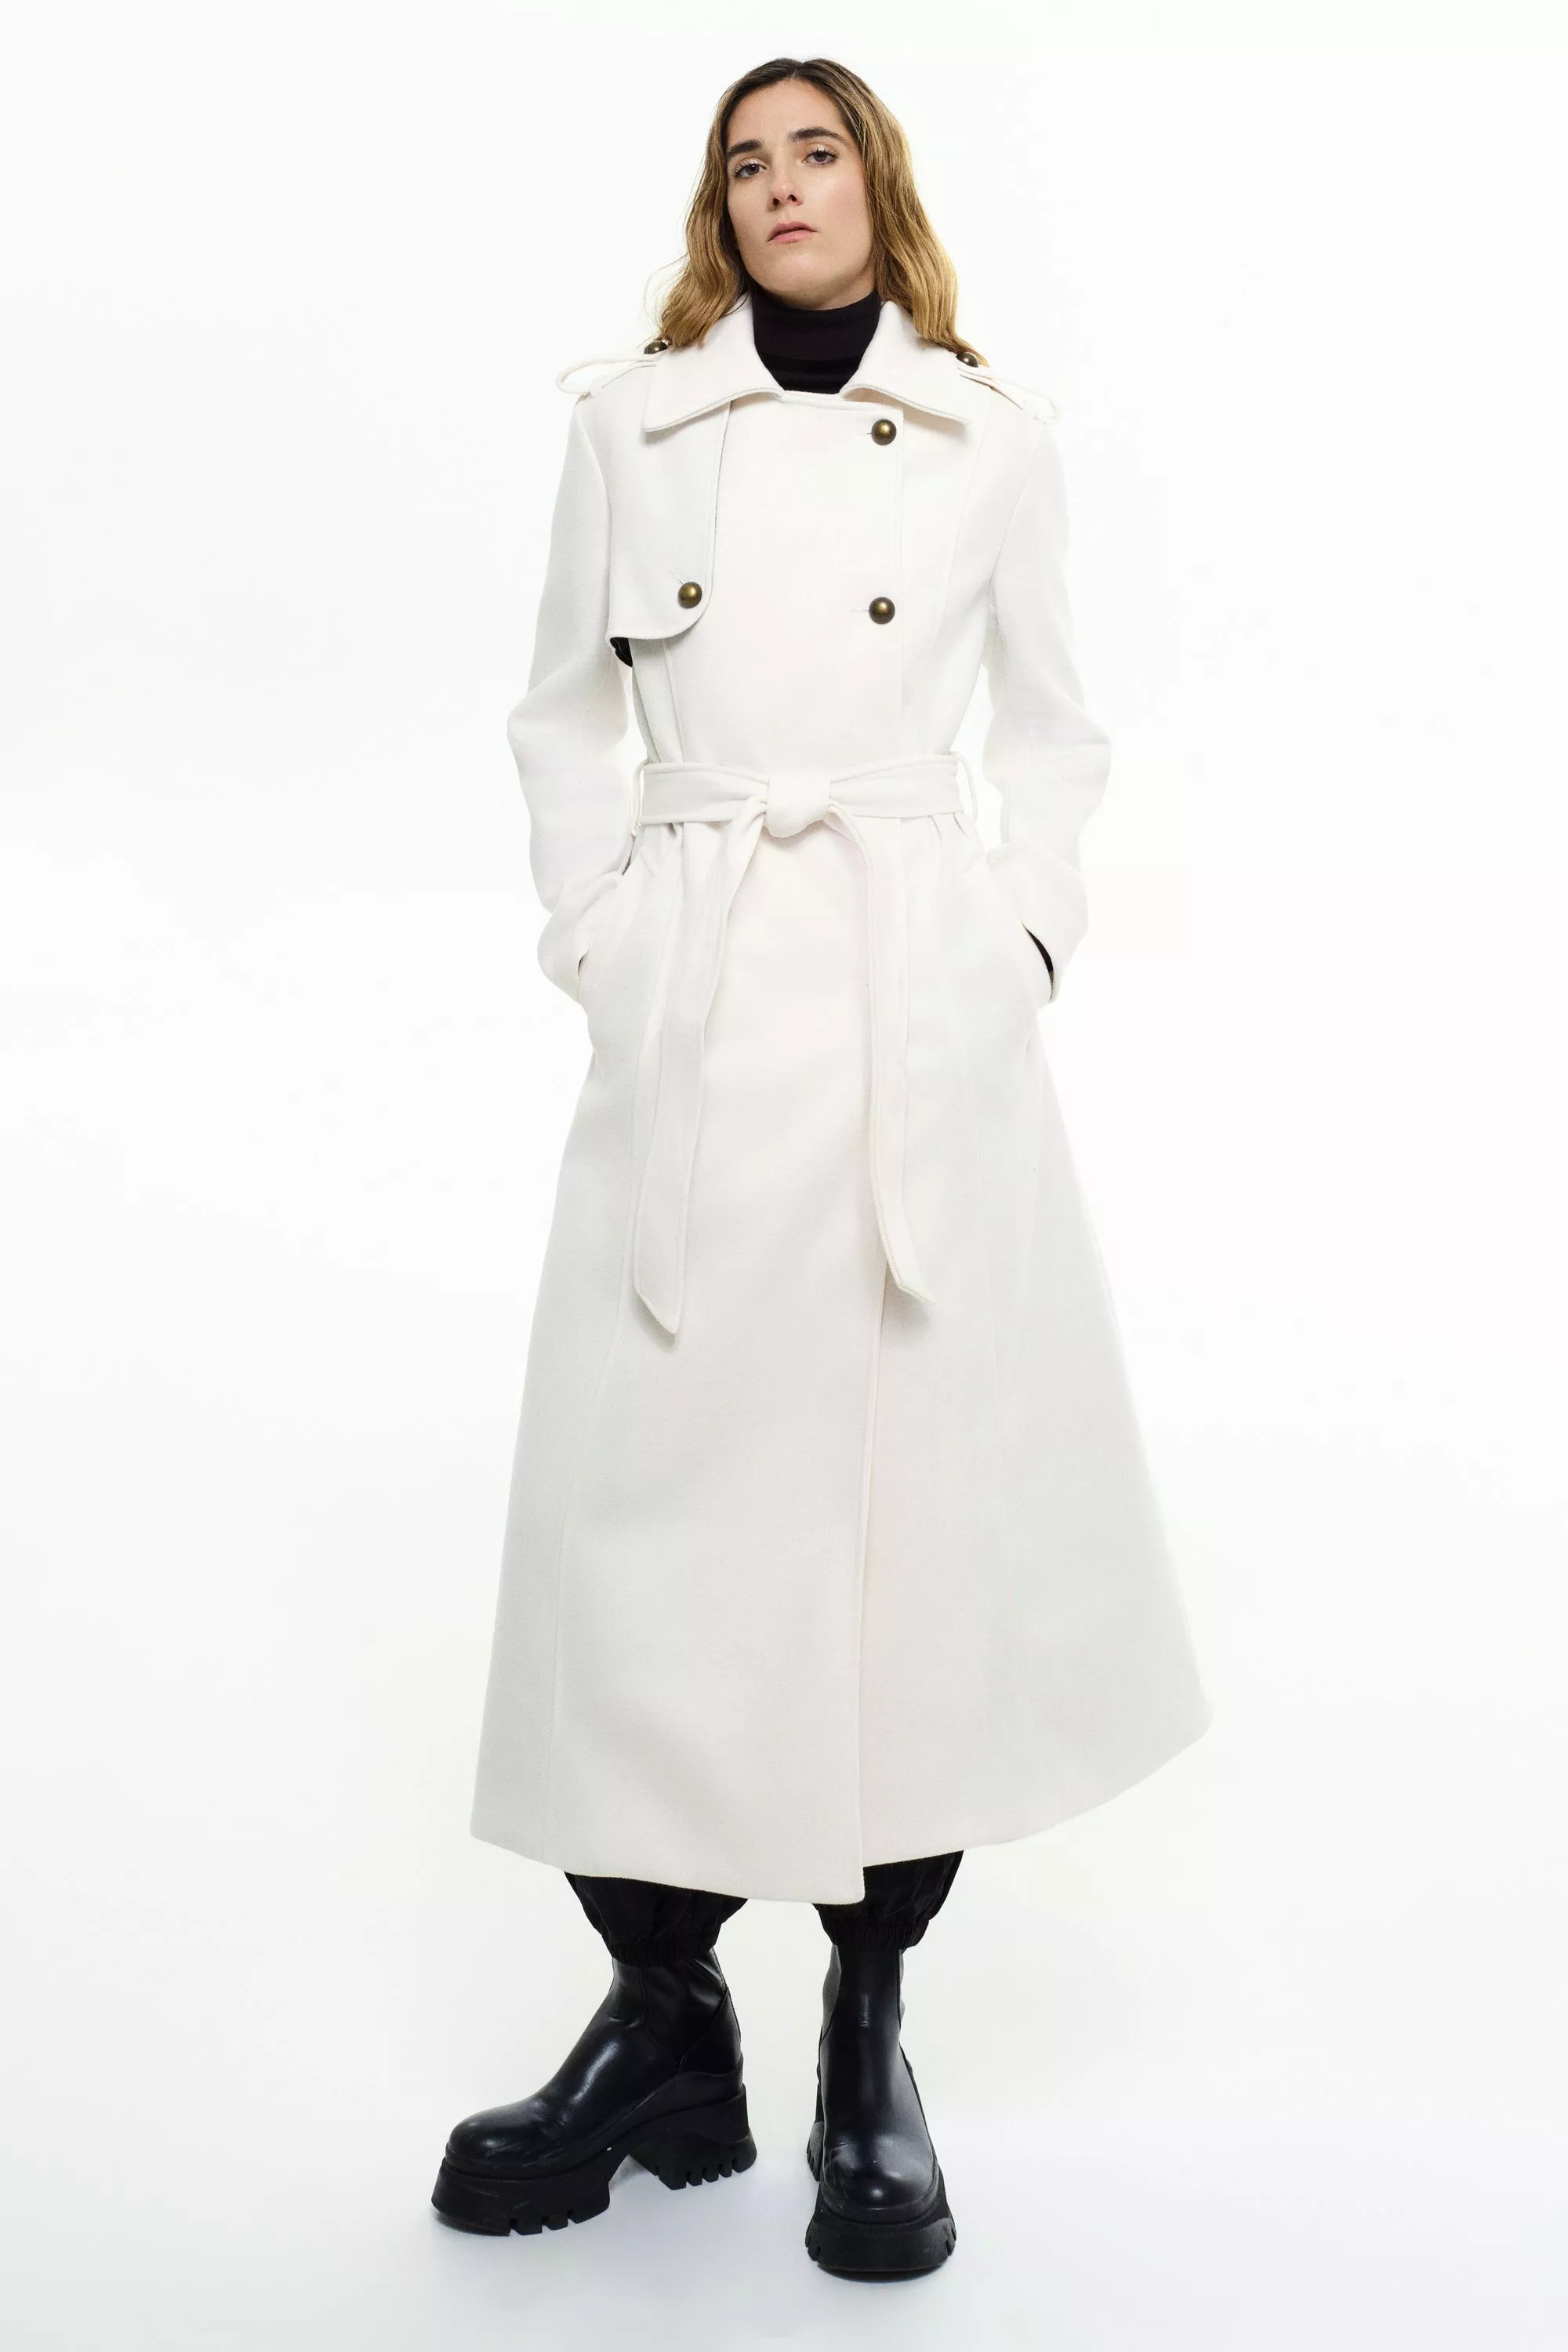 Damen Trenchcoat Simona in Weiß von Ricano, Frontansicht am Model (3)